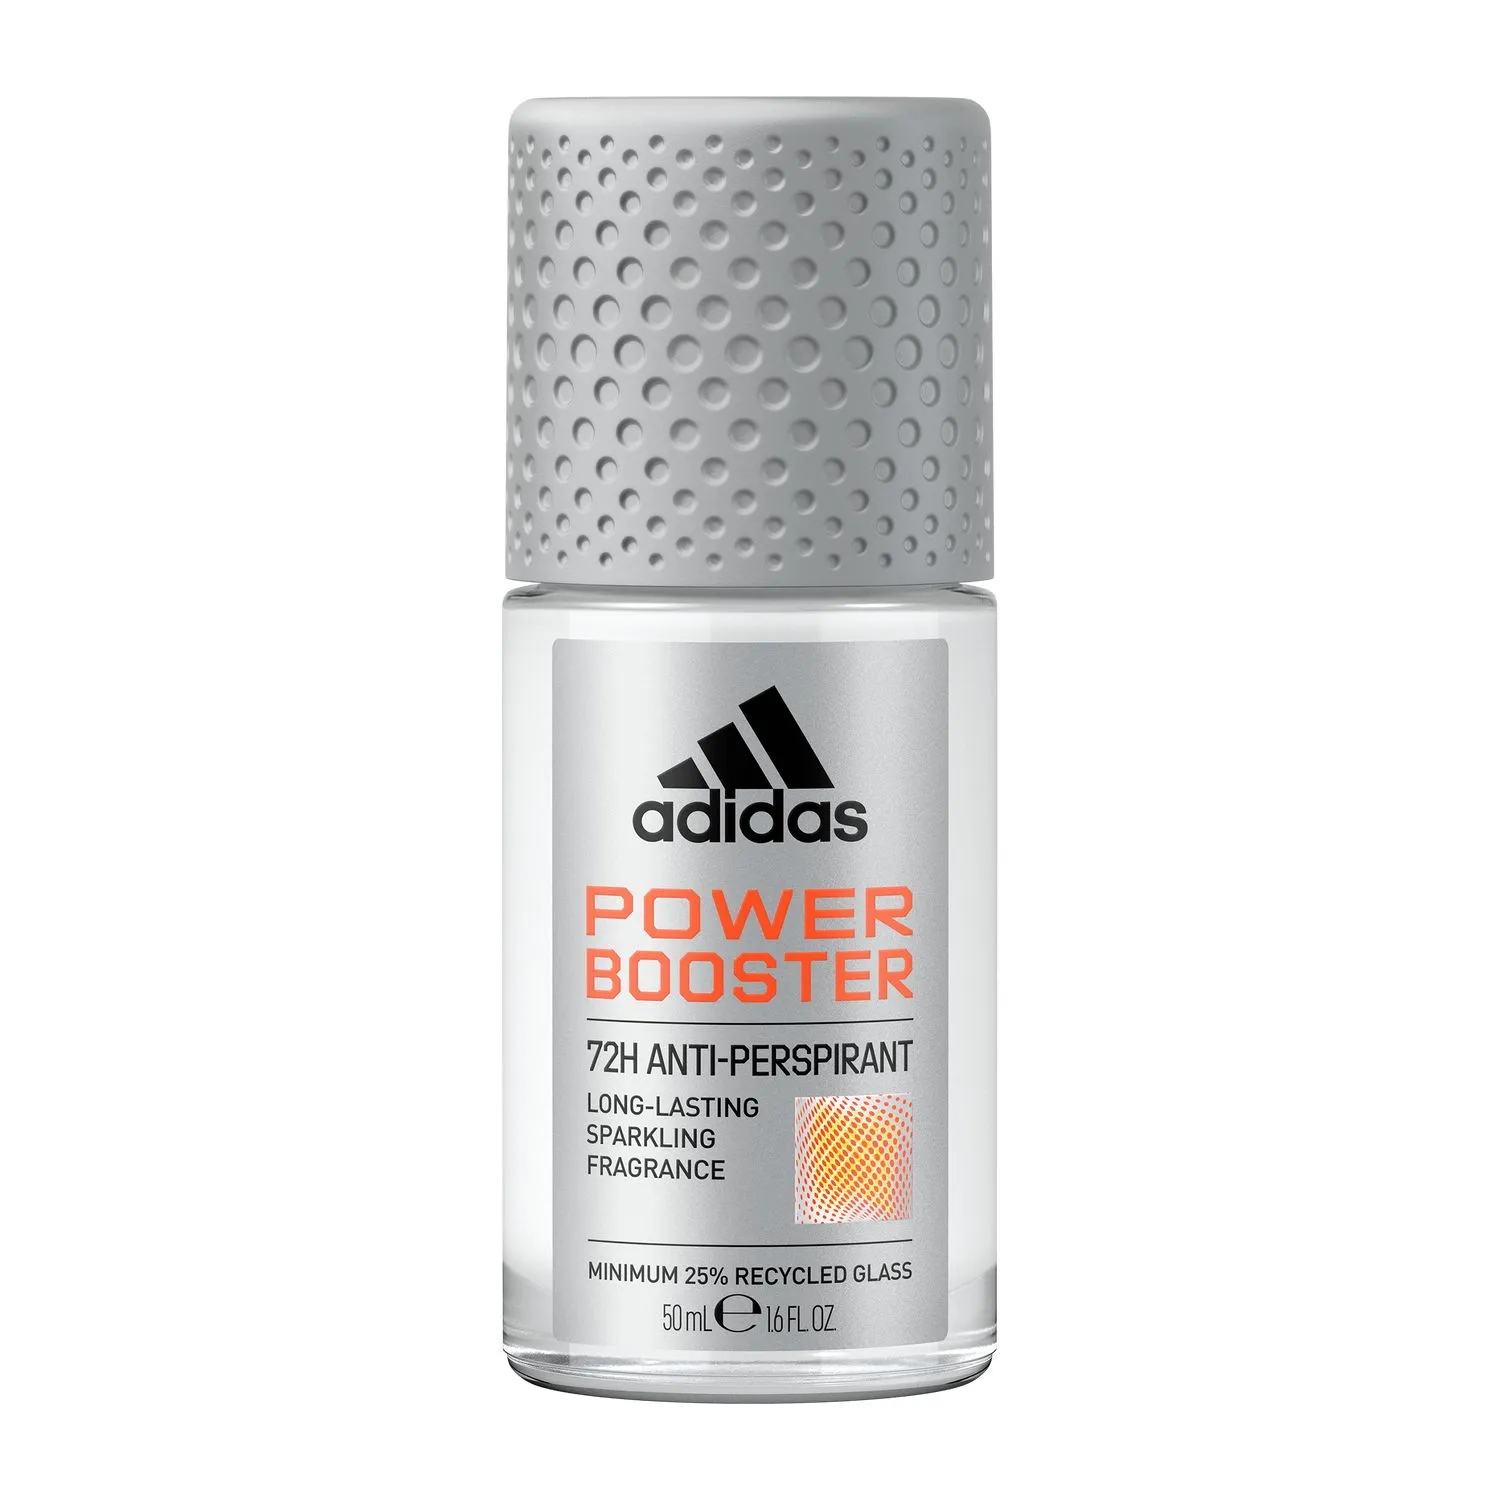 adidas Power Booster antyperspirant w kulce dla mężczyzn, 50 ml